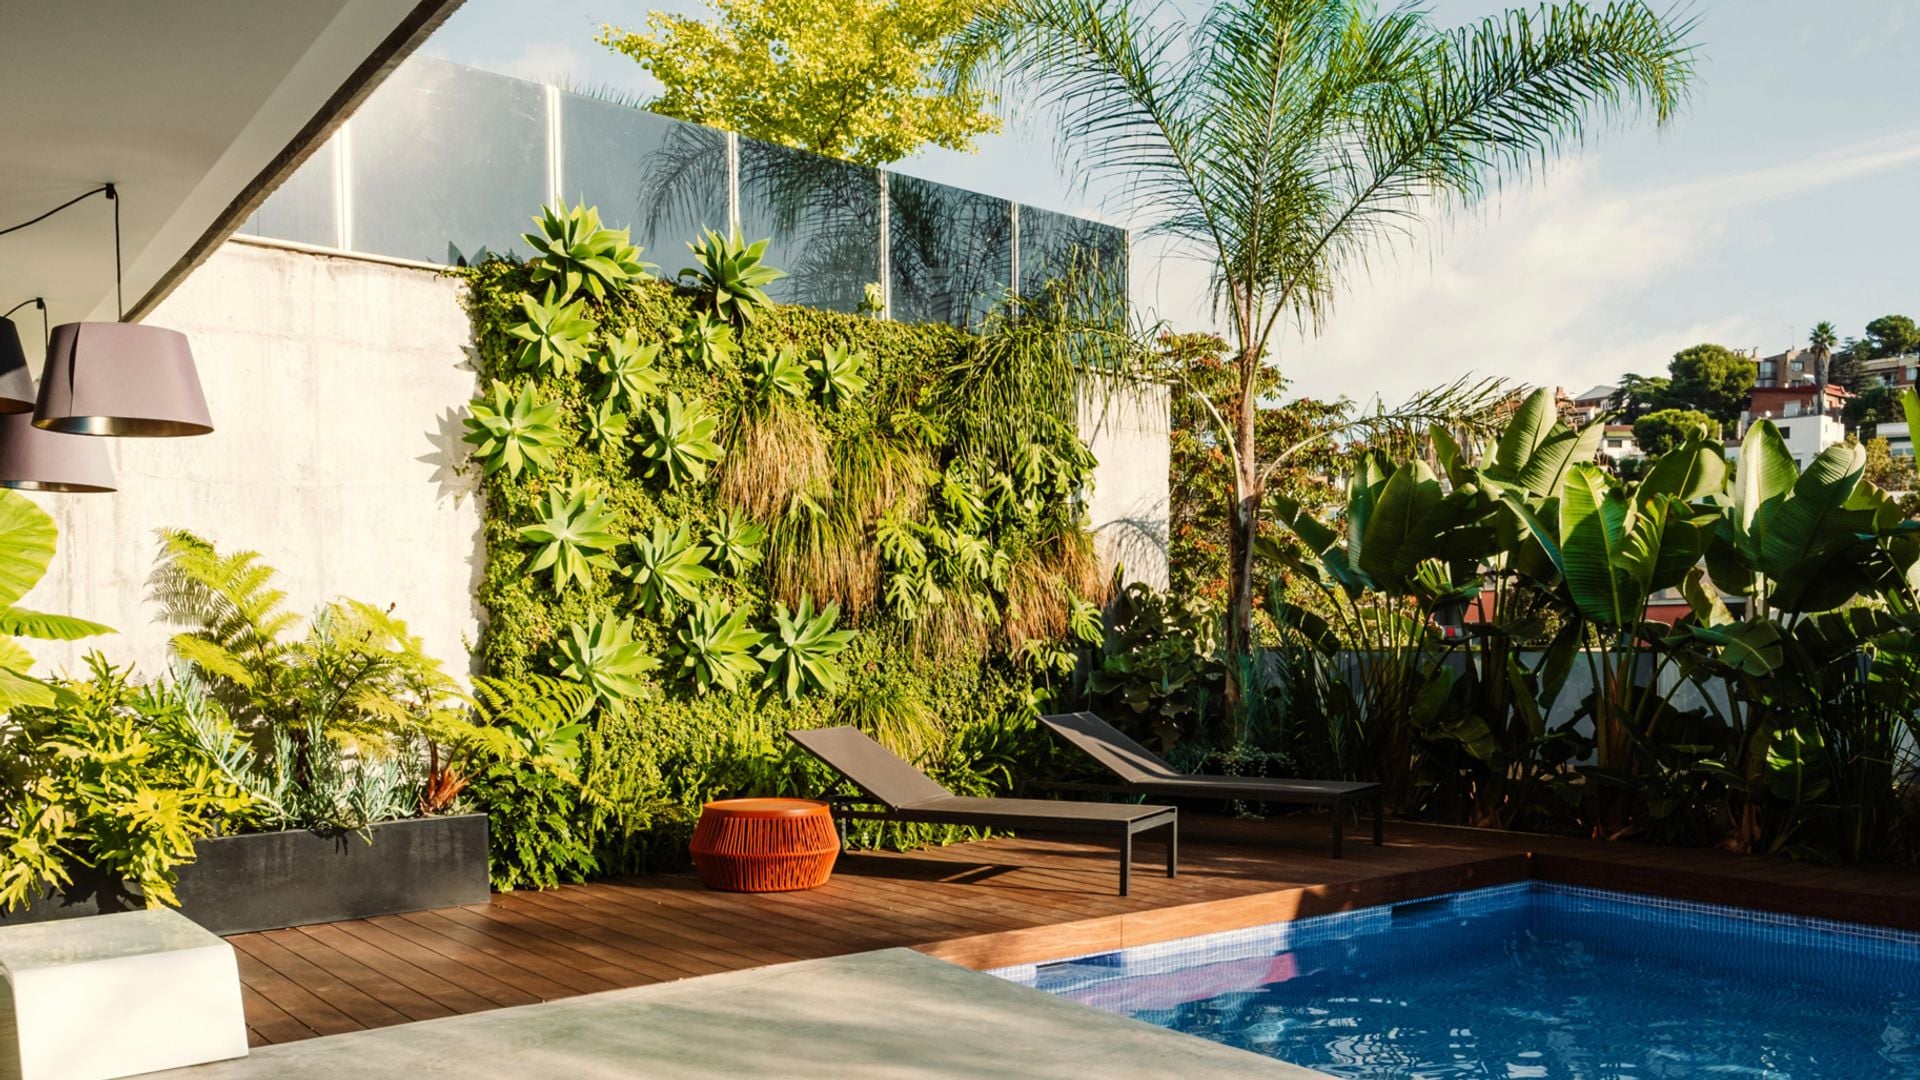 Piscina rodeada de verde, con un jardín vertical junto a la zona de solárium, en una terraza urbana diseñada por la empresa de paisajismo Simbiosi Estudi